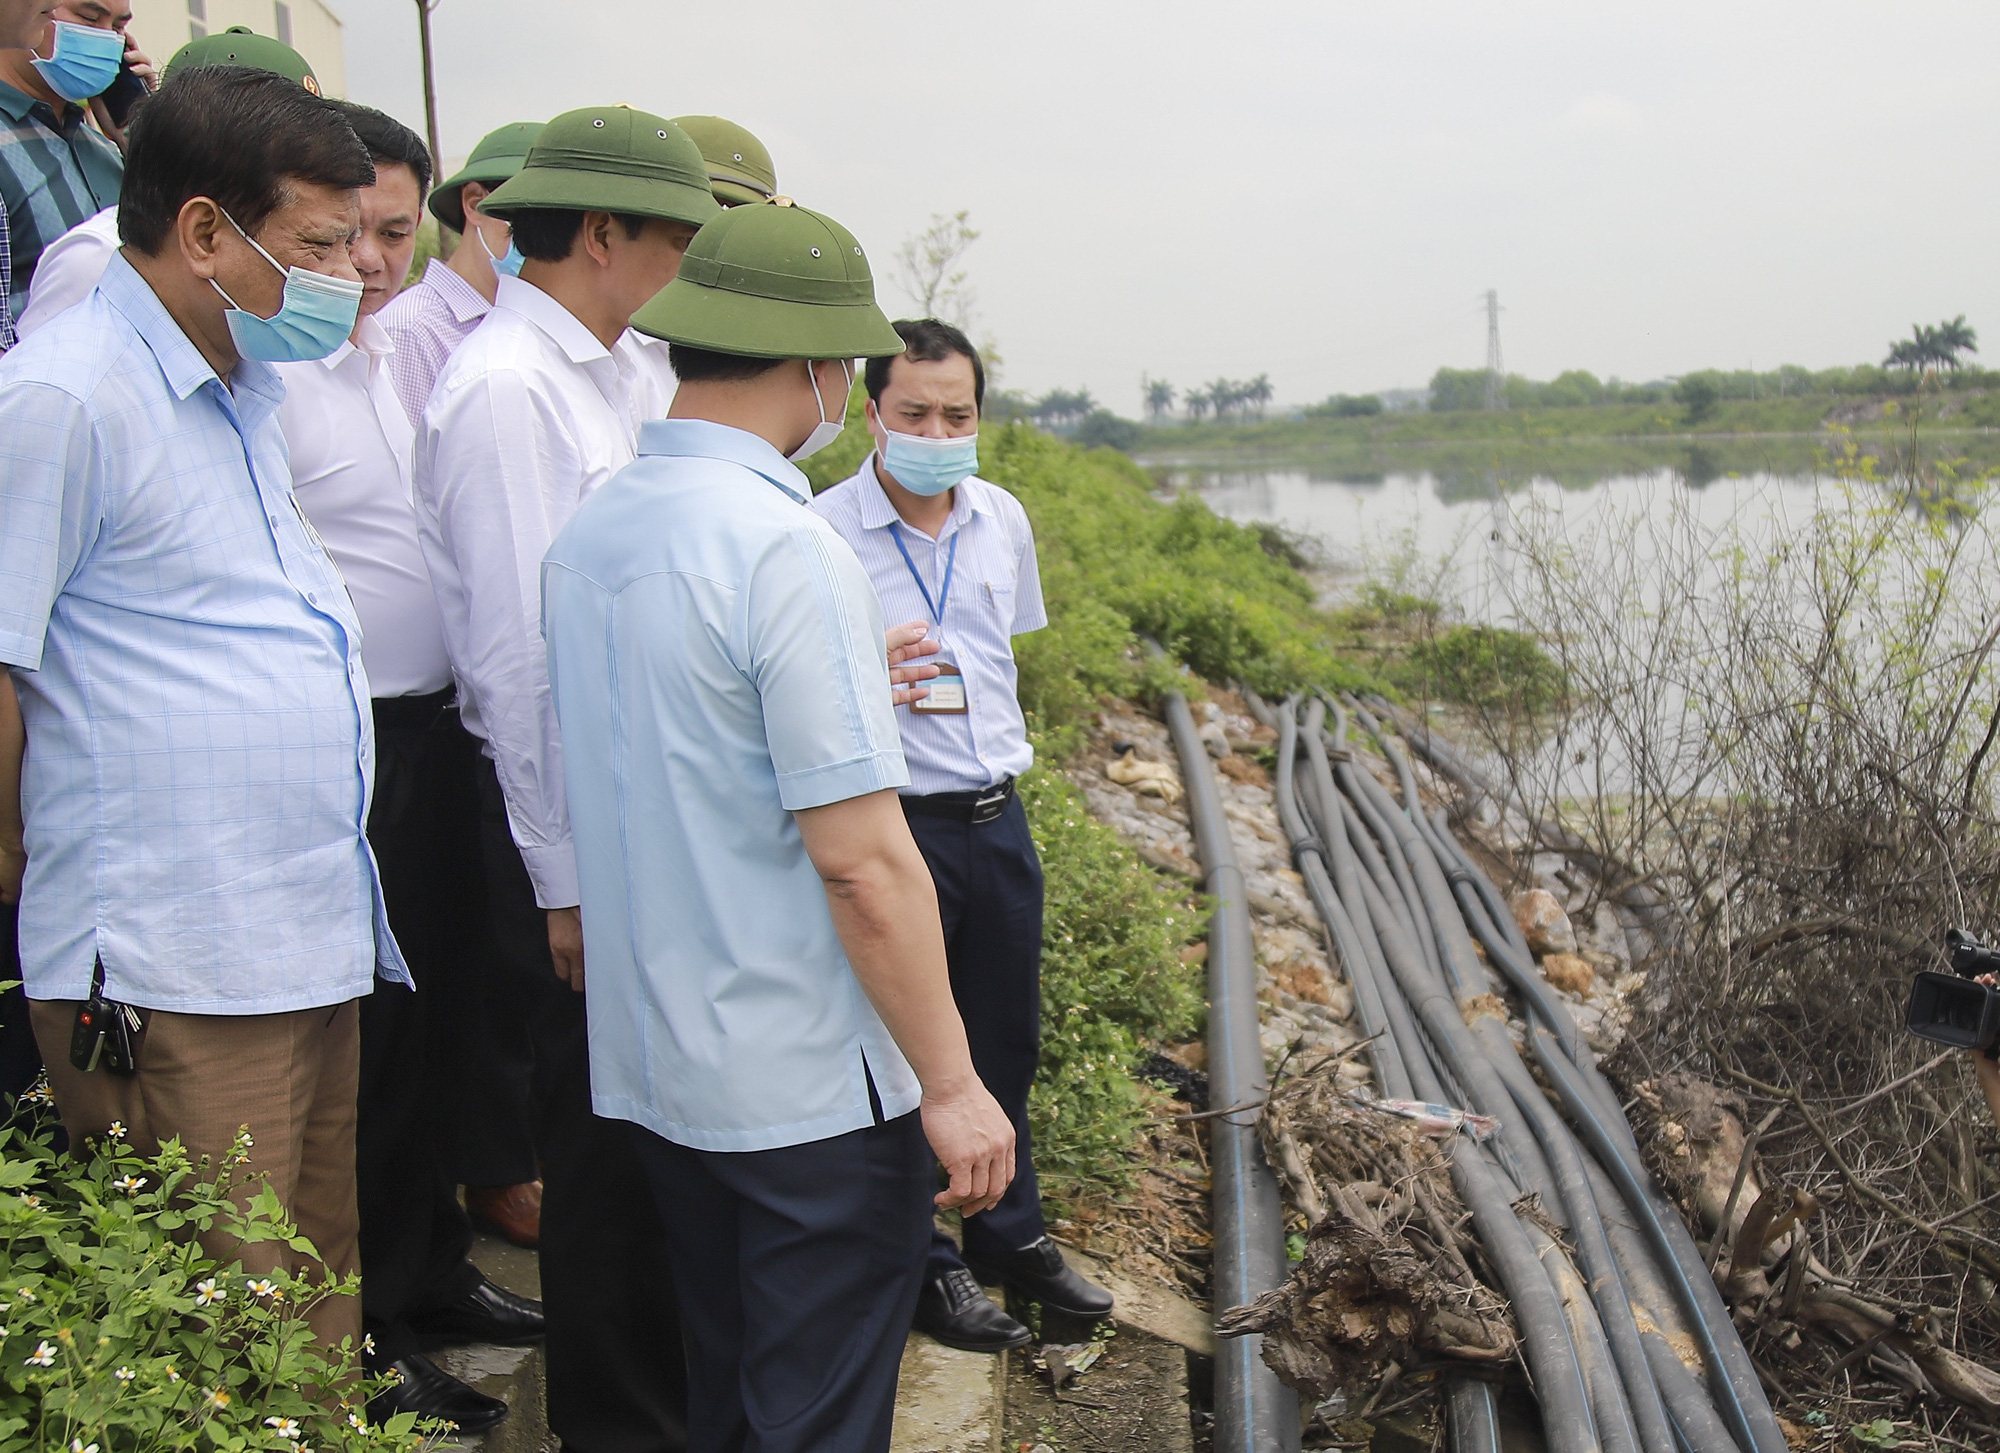 Bắc Ninh: Xử lý hình sự các trường hợp chống đối, gây ô nhiễm môi trường kinh hoàng ở làng giấy Phong Khê - Ảnh 1.